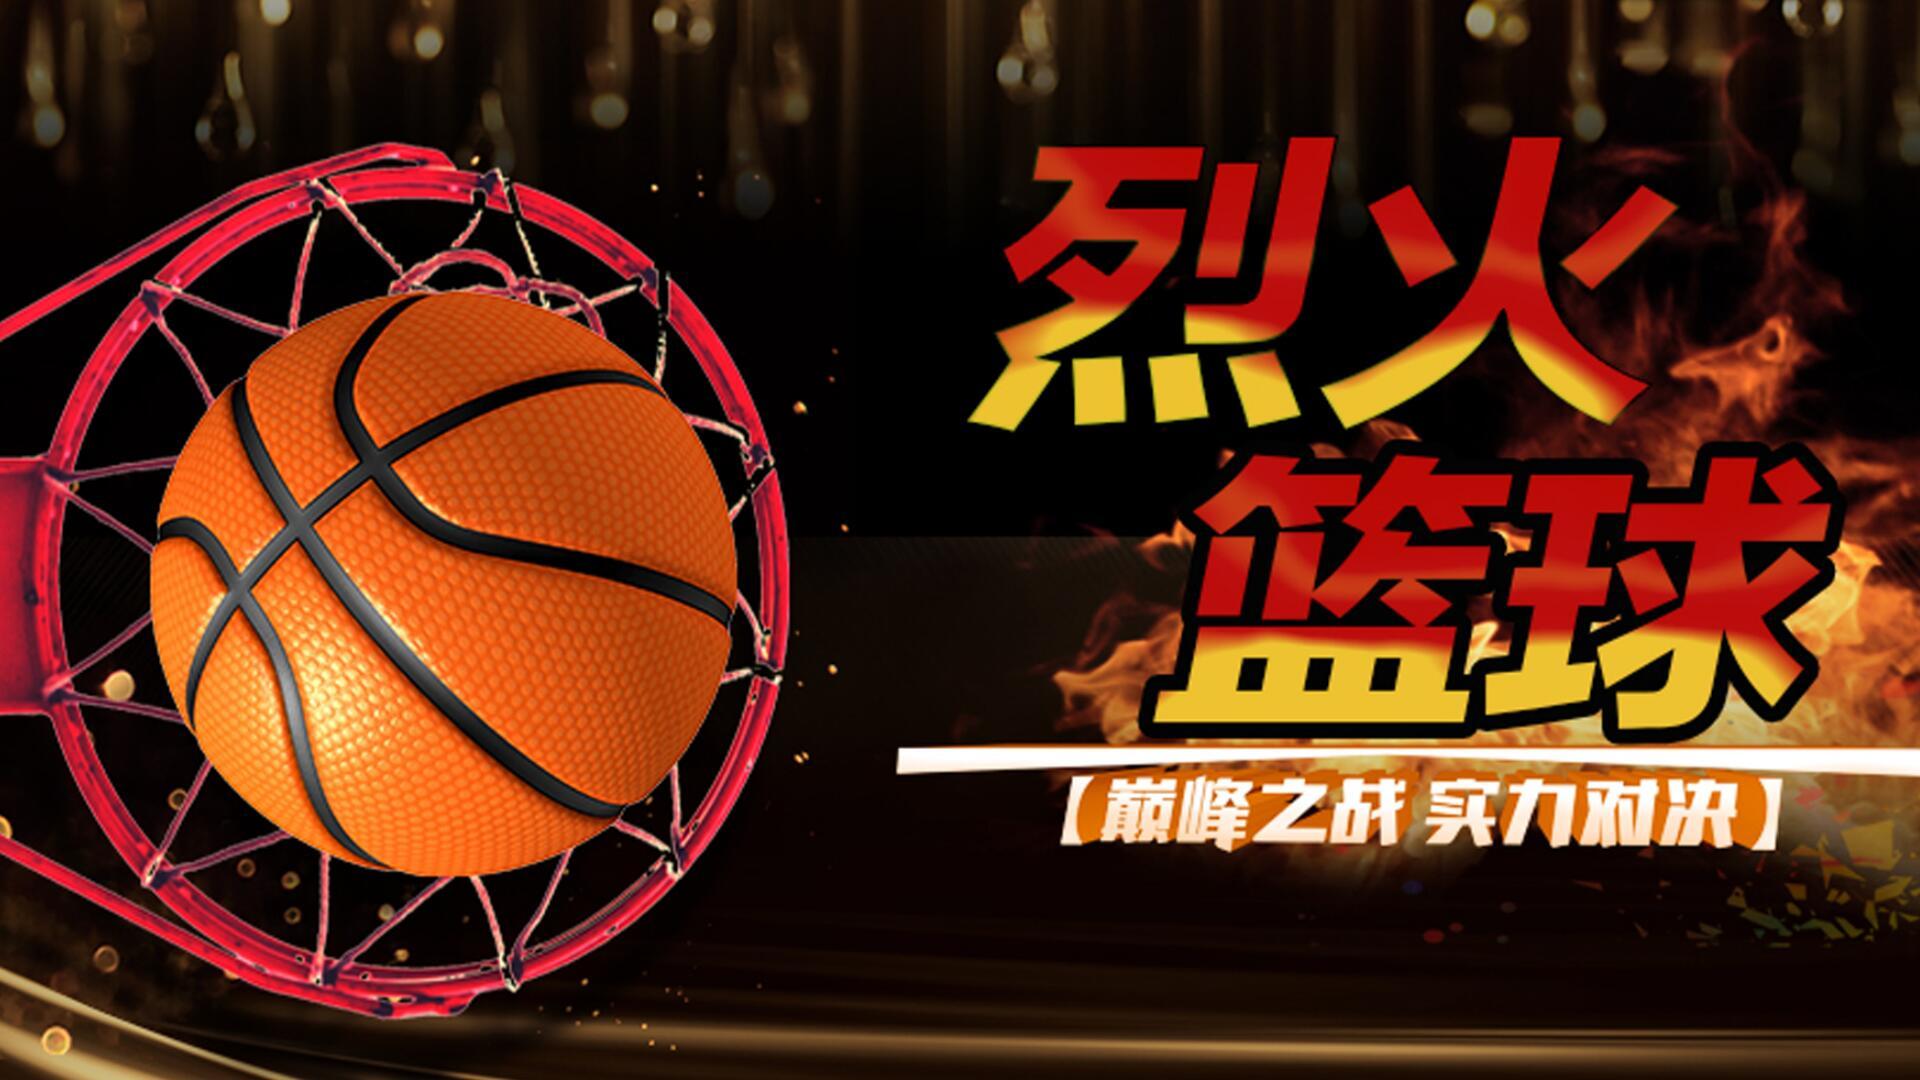 Banner of 火のバスケットボール 